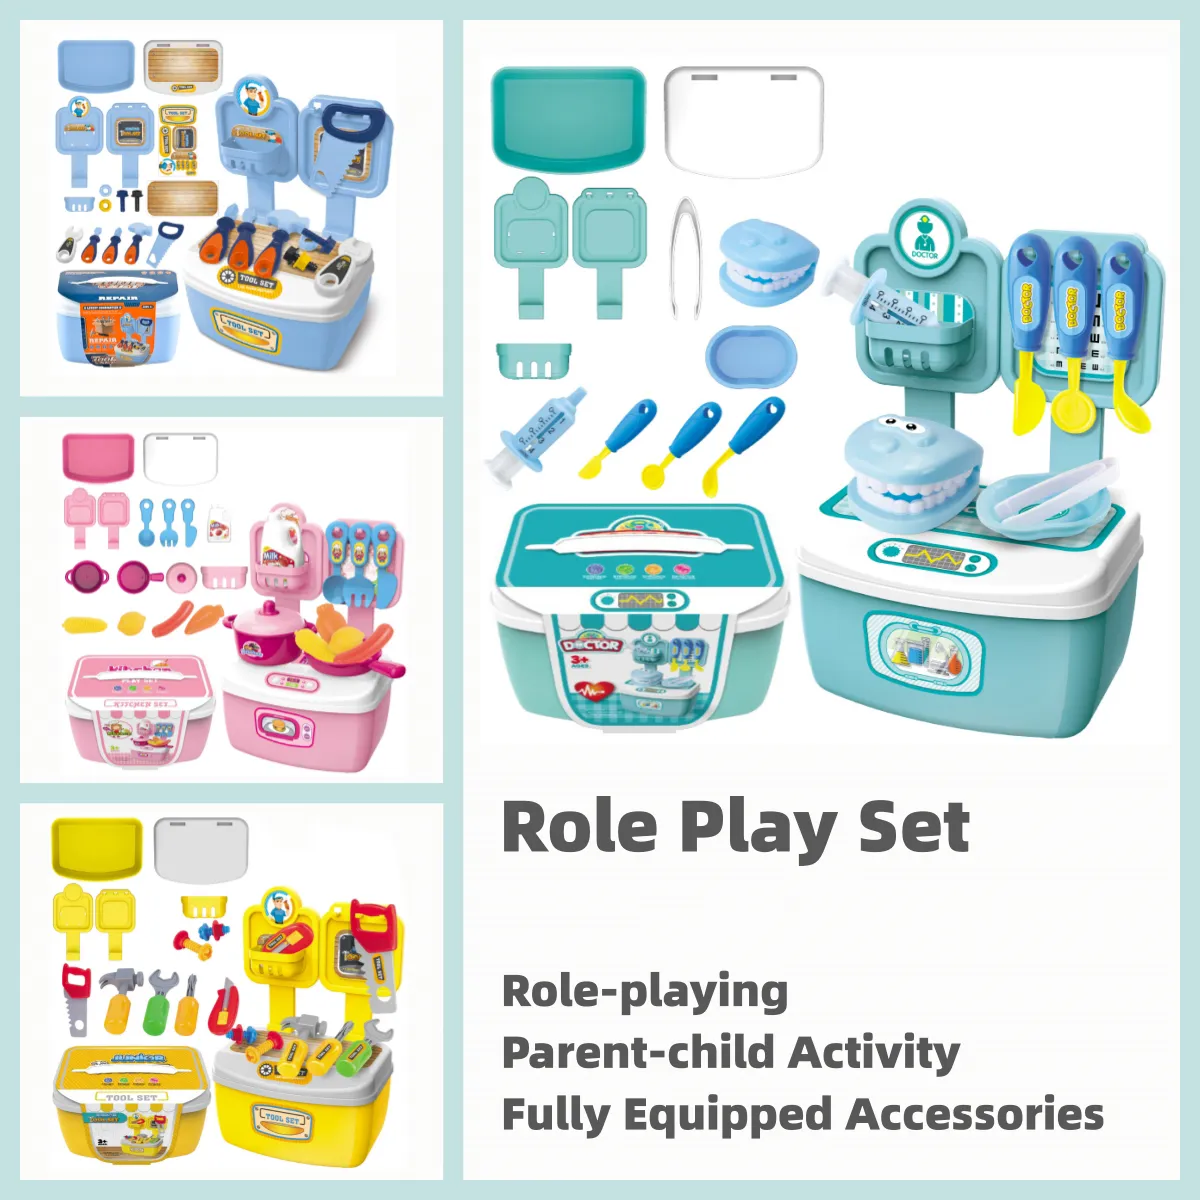 廚房/工具箱/美容美髮沙龍/醫生套裝兒童角色扮演套裝裝扮工具玩具